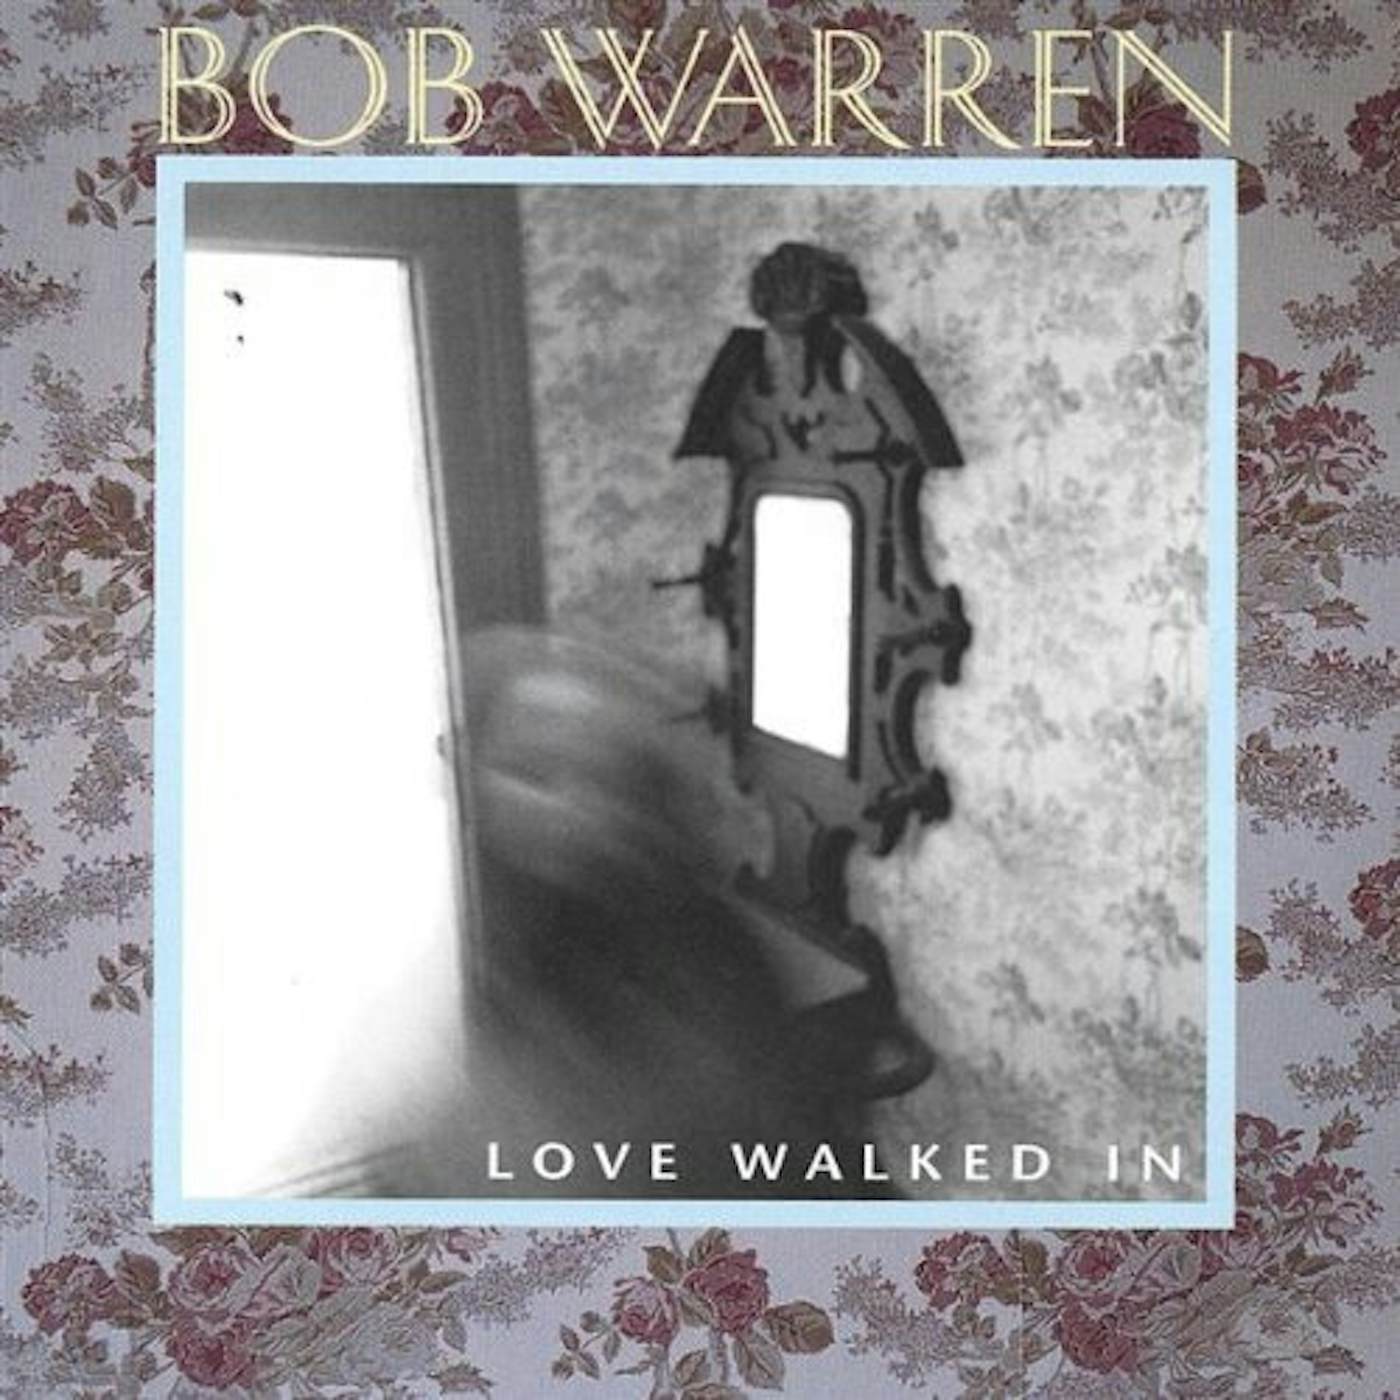 Bob Warren LOVE WALKED IN CD